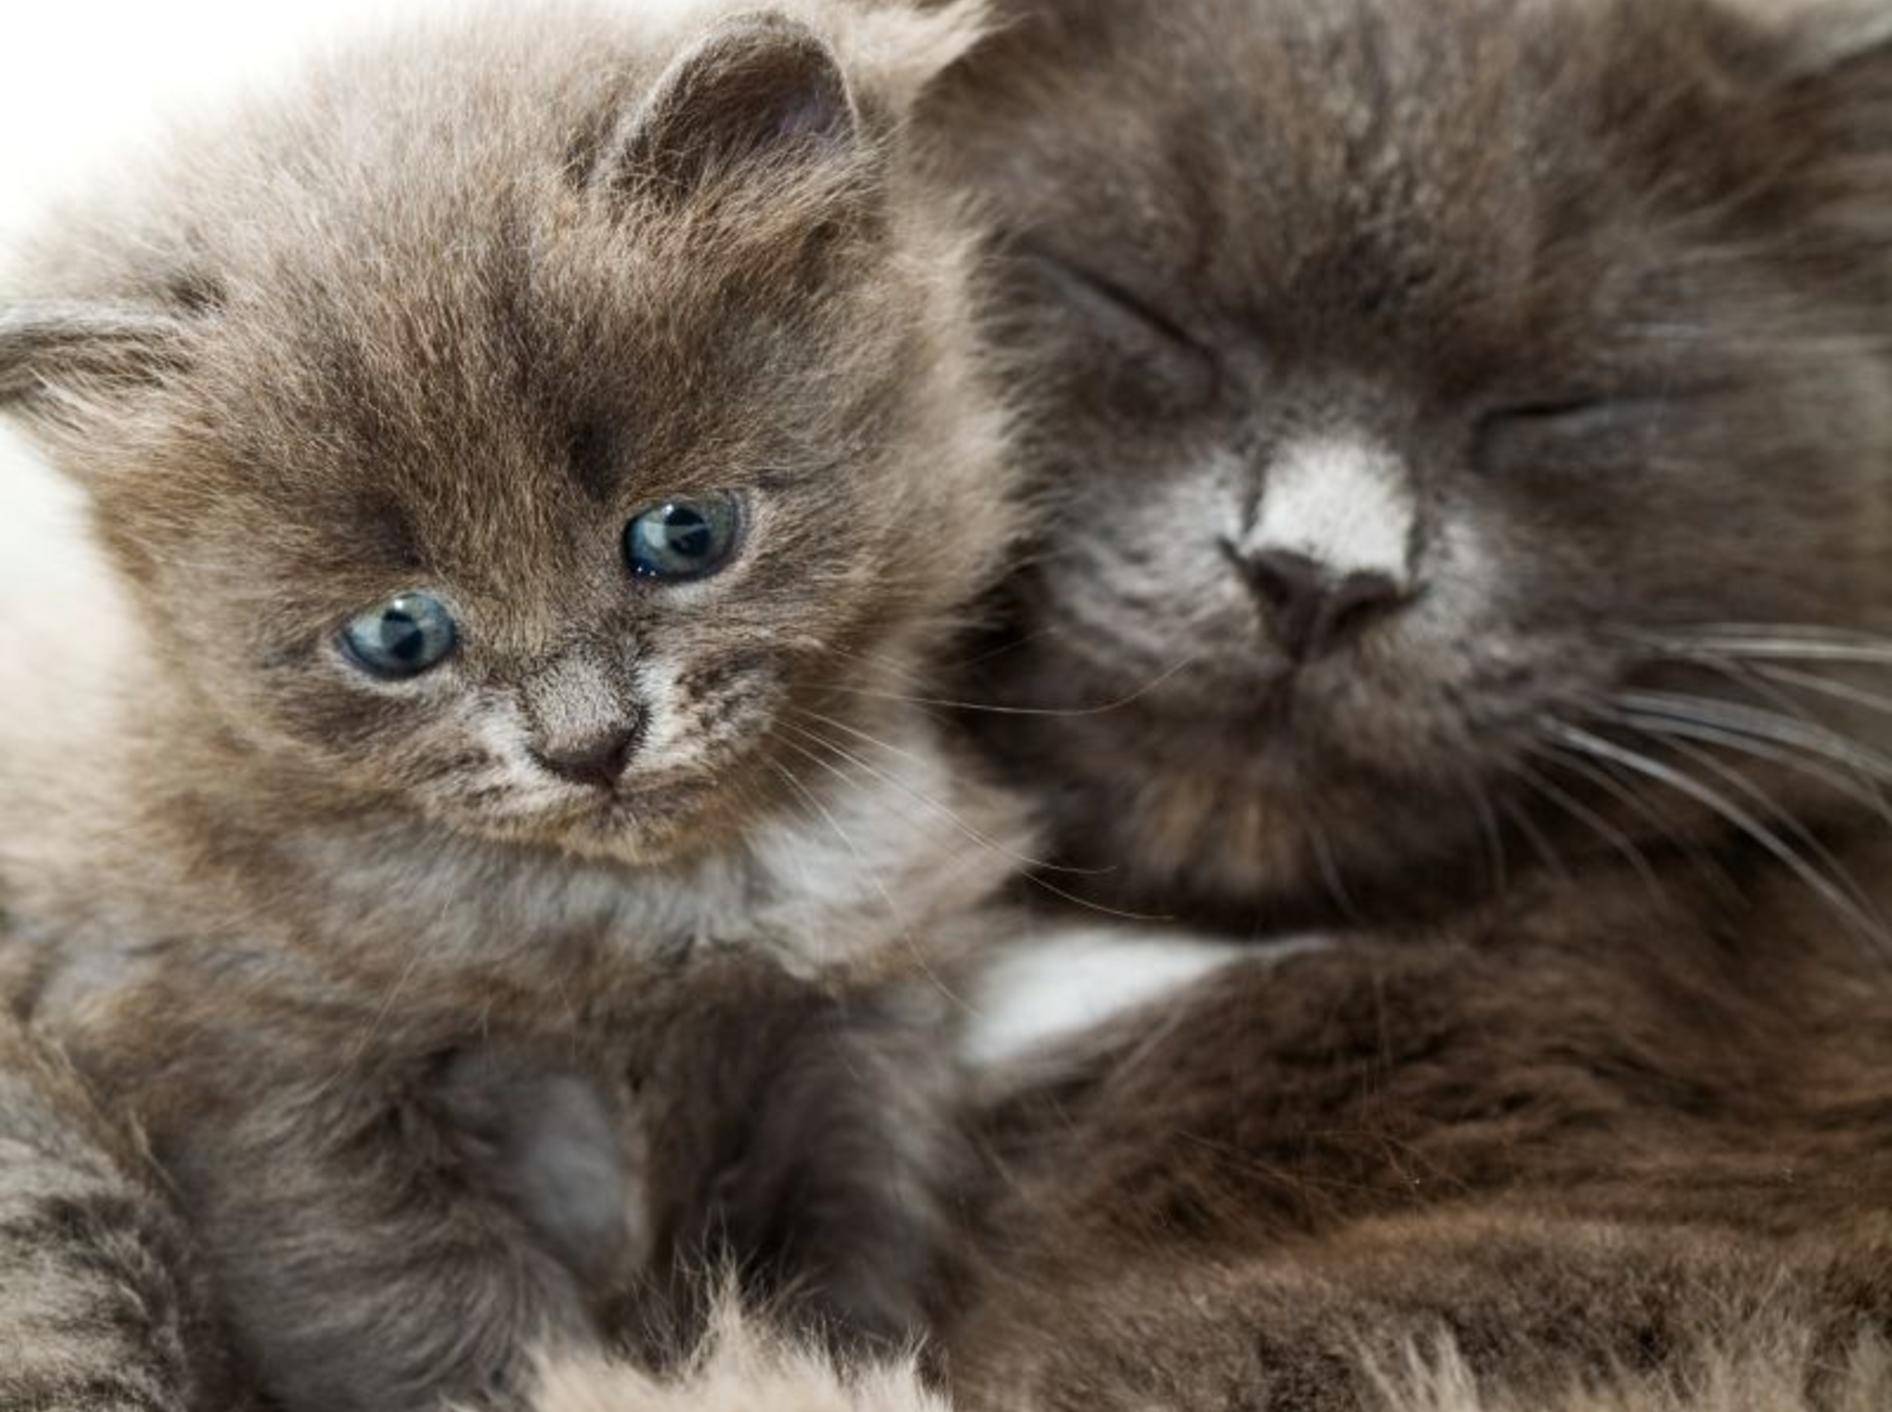 Flauschig und kuschelig: Diese süße Katzenfamilie macht den Anfang – Bild: Shutterstock / Larisa Lofitskaya